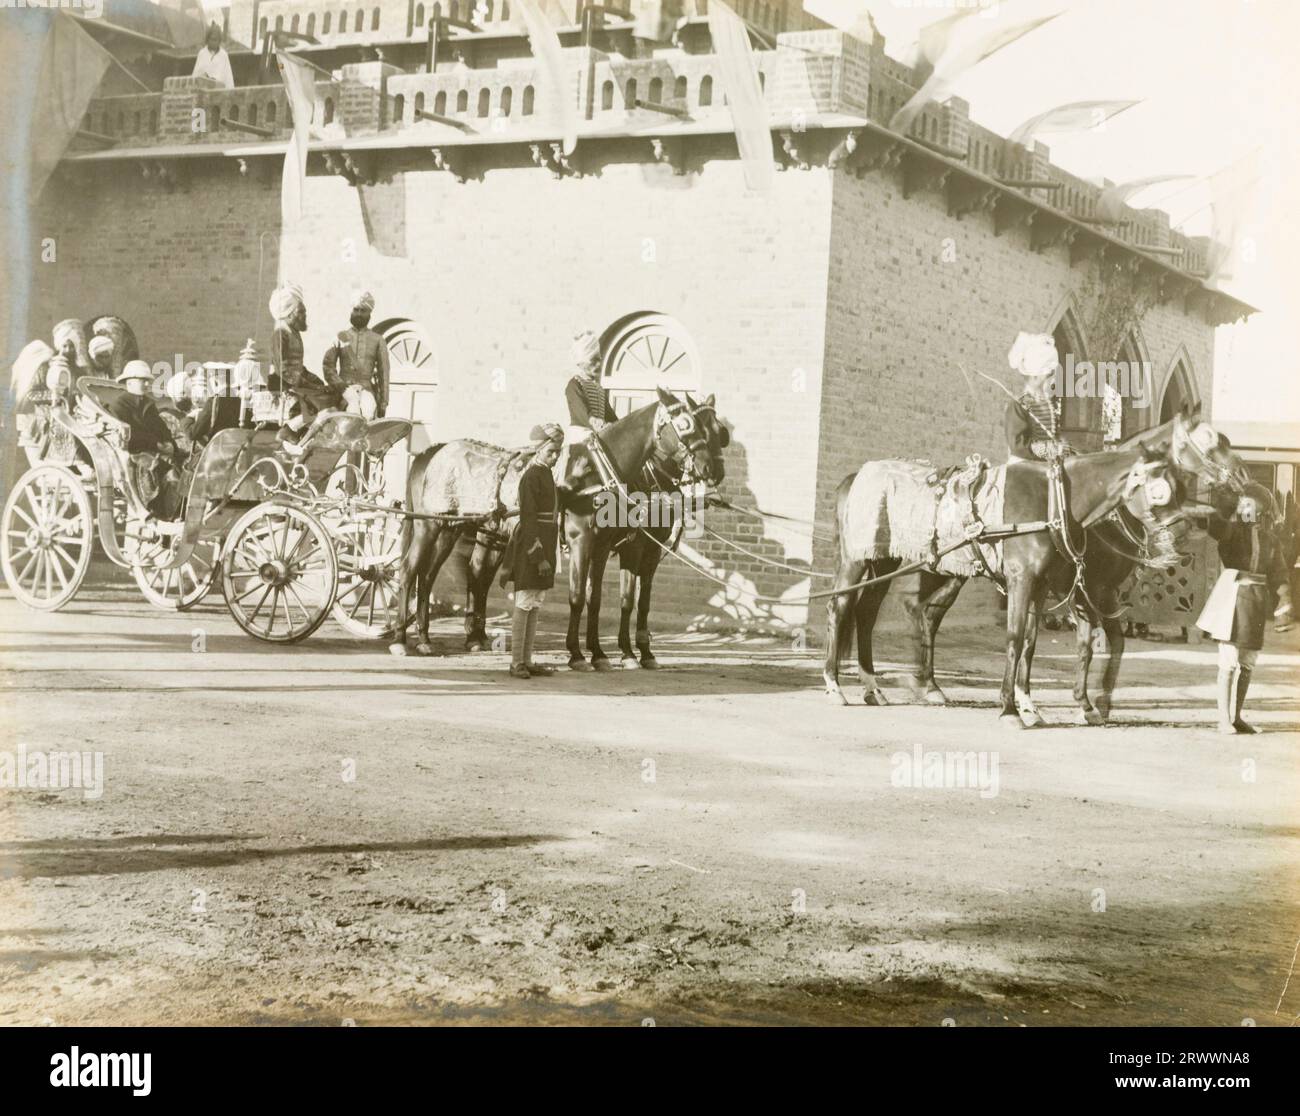 Quattro cavalli e i loro assistenti attendono istruzioni per tirare una carrozza con quattro funzionari del governo durante una processione, probabilmente all'installazione di Edward Maclagan come governatore del Punjab. Foto Stock